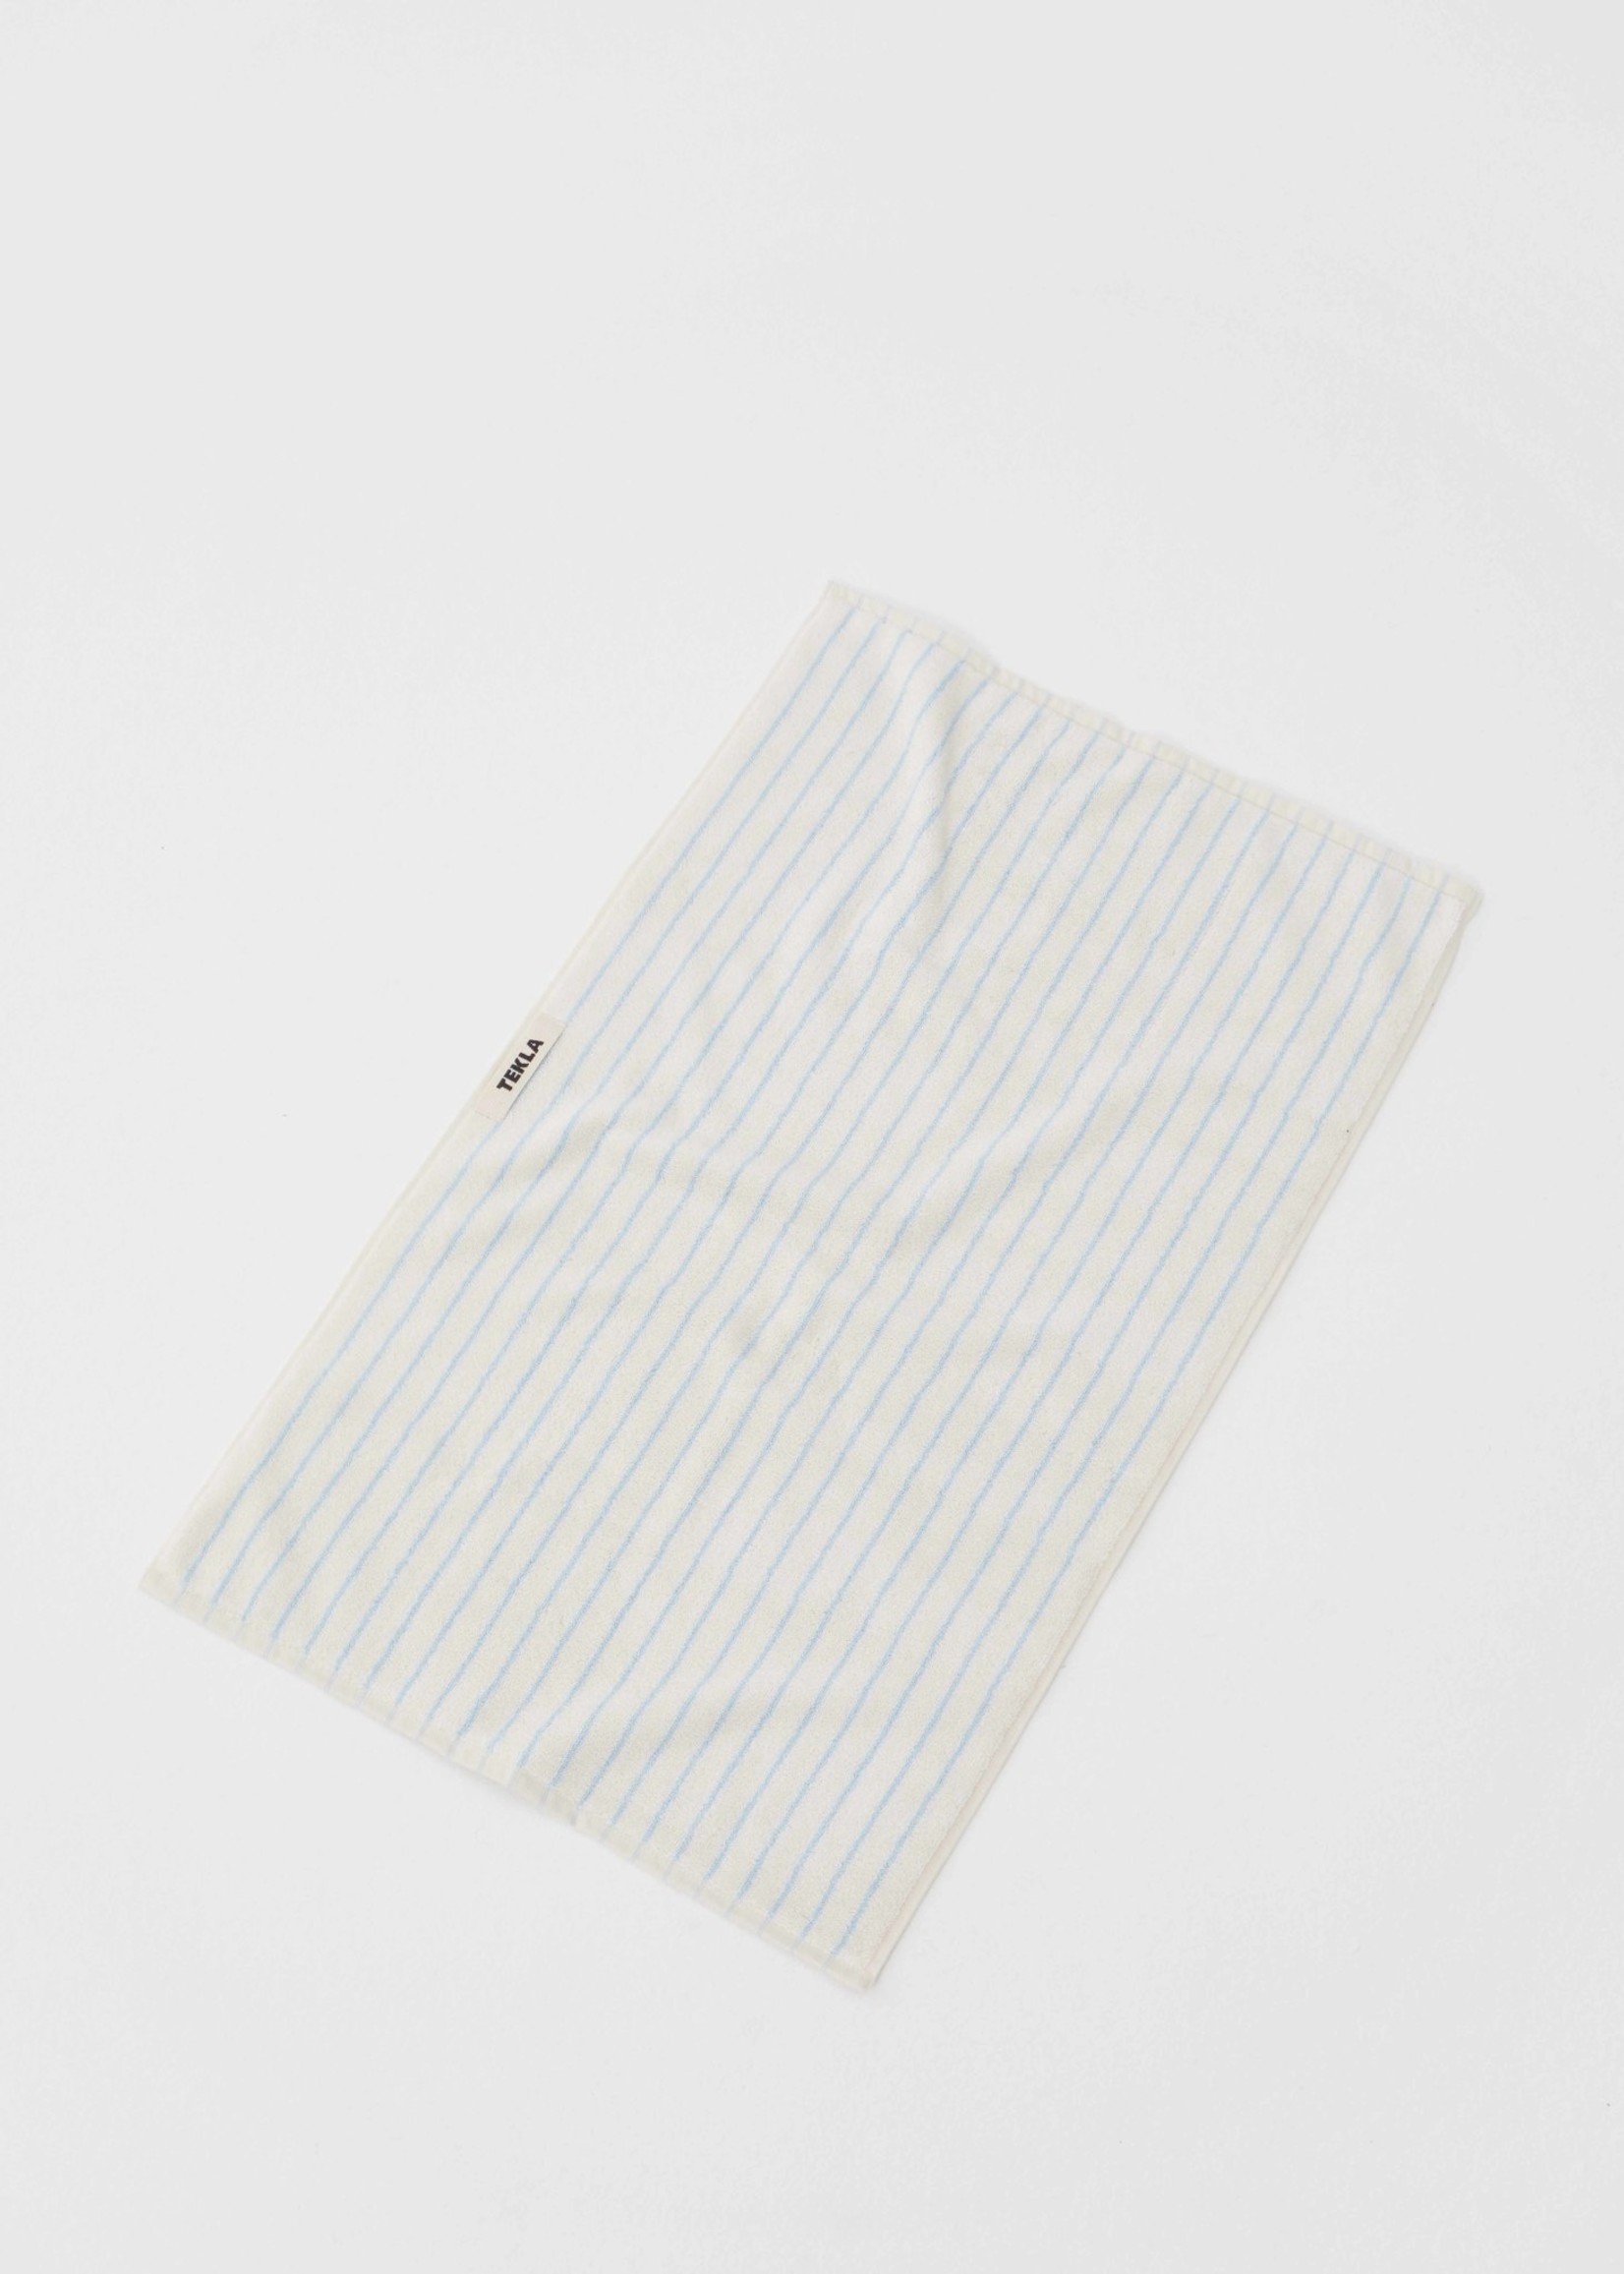 TEKLA Organic Hand Towel in Baby Blue Stripe